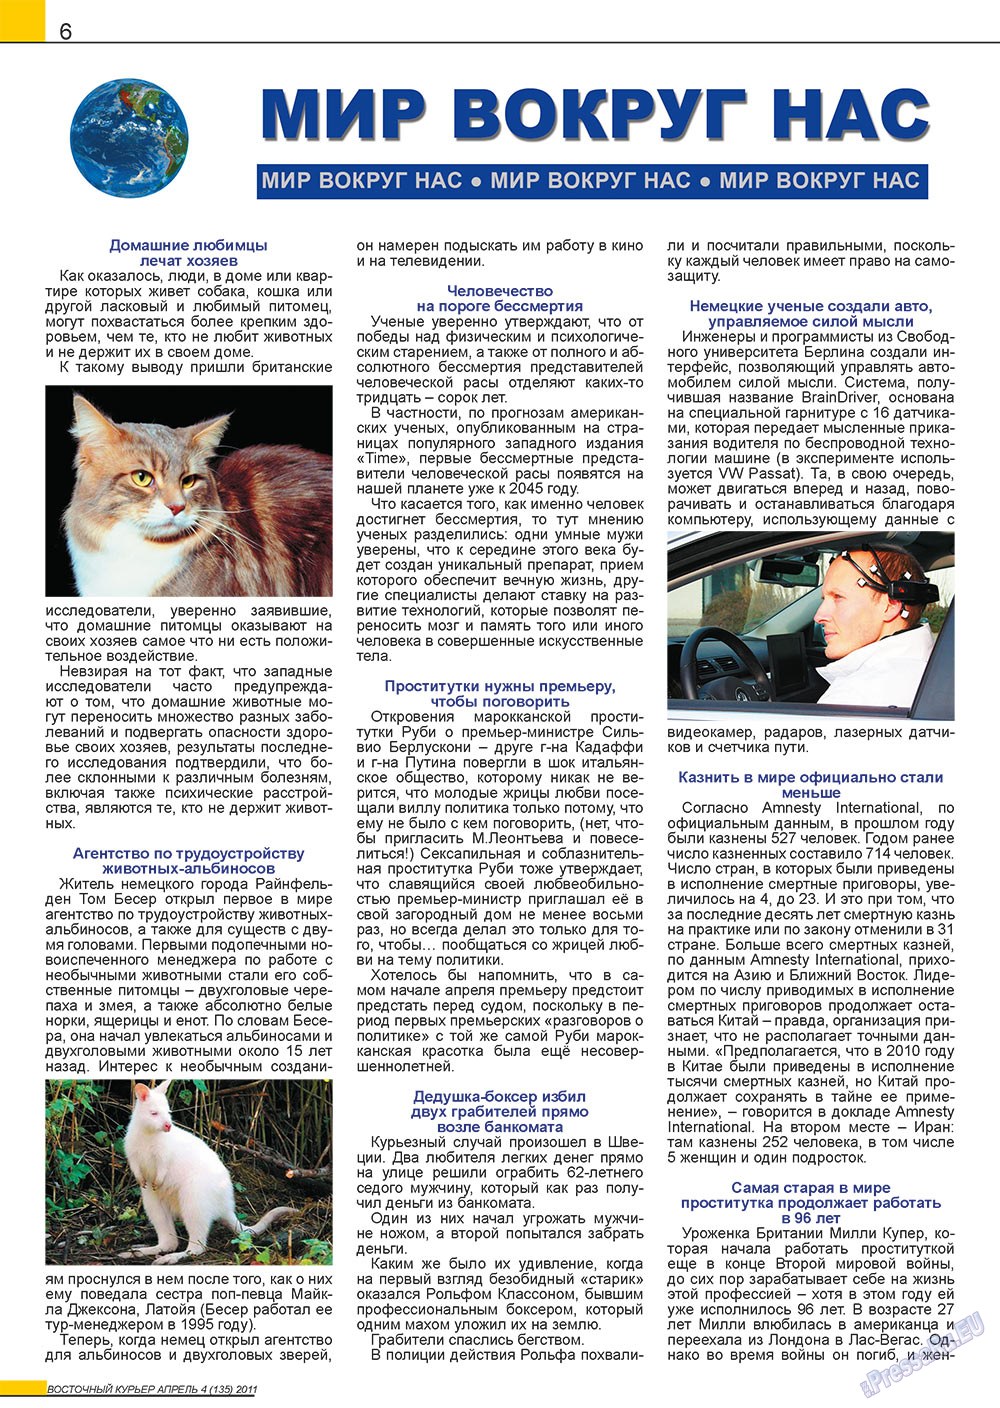 Восточный курьер (журнал). 2011 год, номер 4, стр. 6